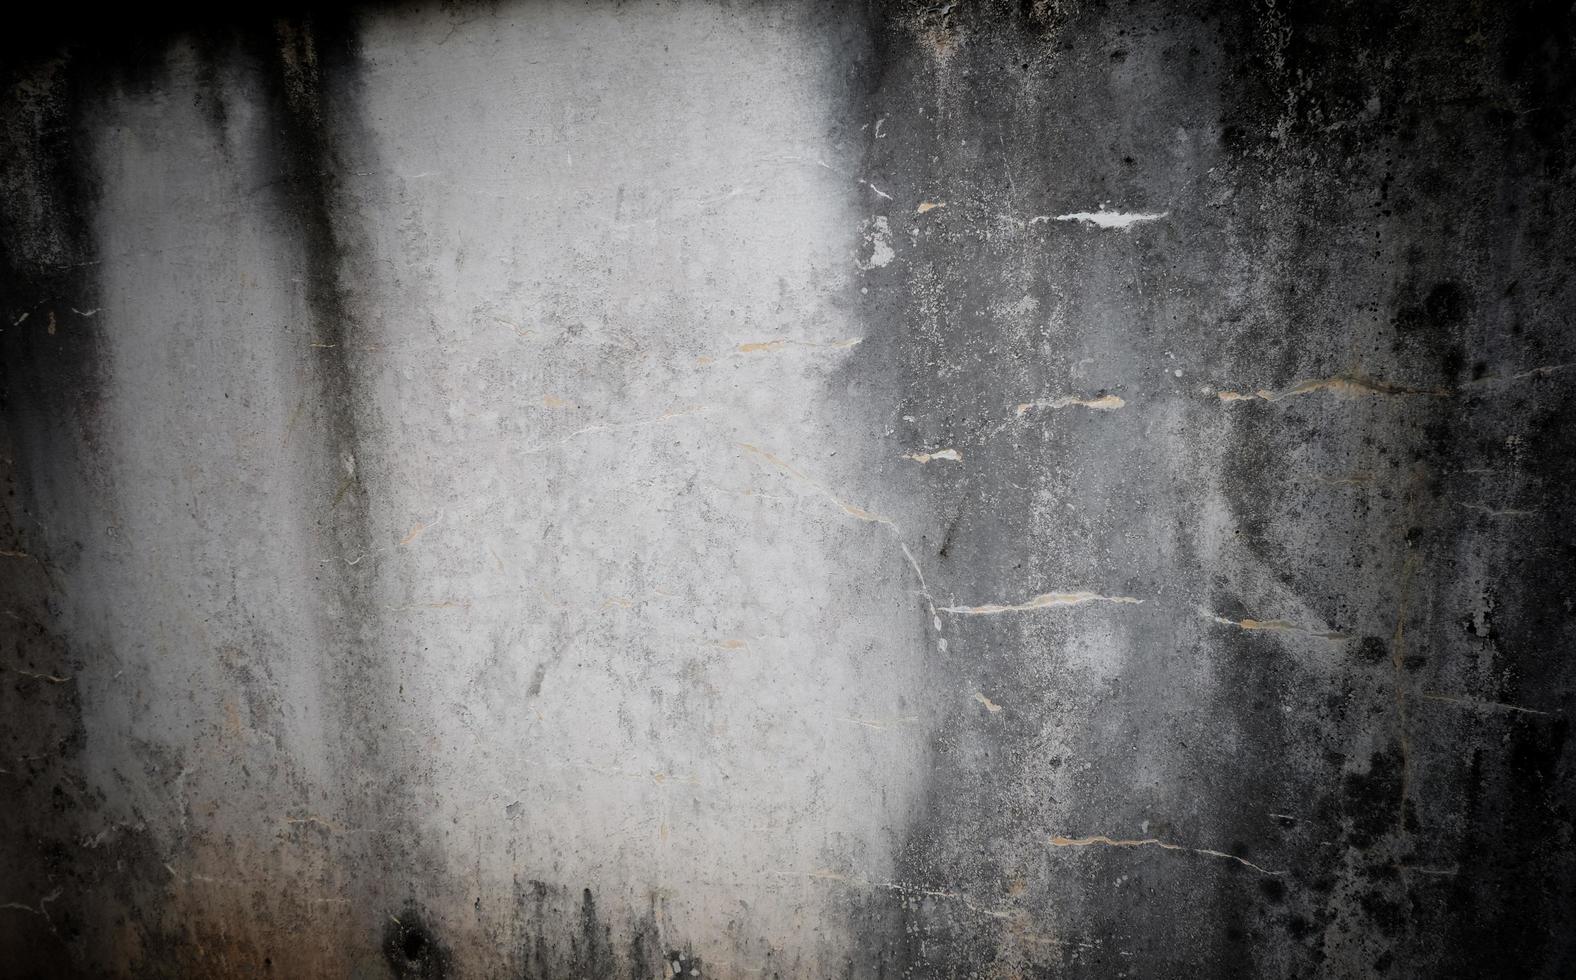 gammal vägg textur bakgrund full av fläckar och repor, grunge textur bakgrund foto